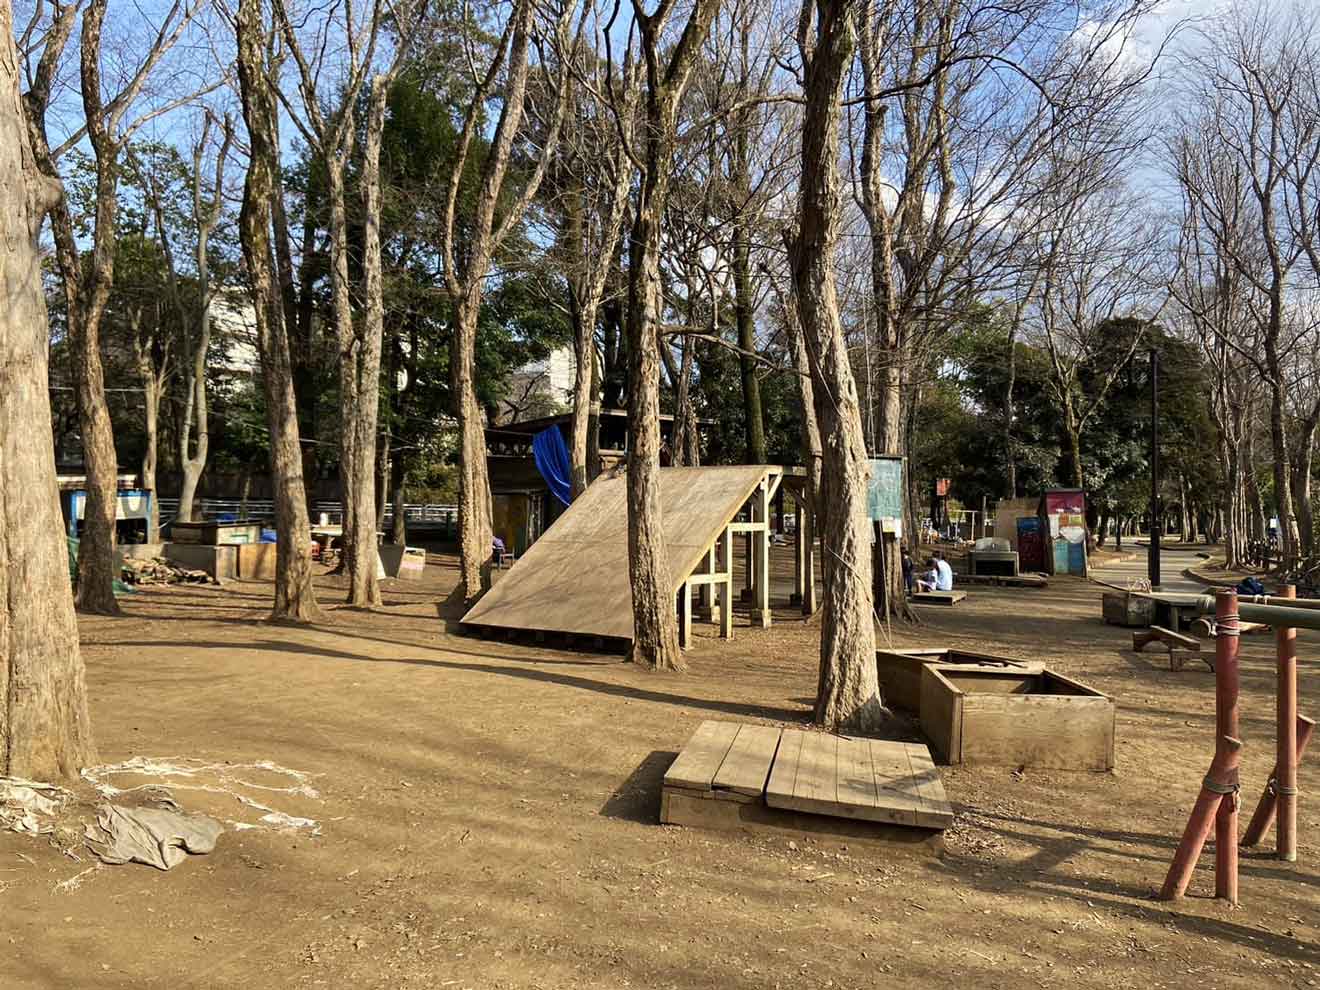 「世田谷公園」のプレイパーク